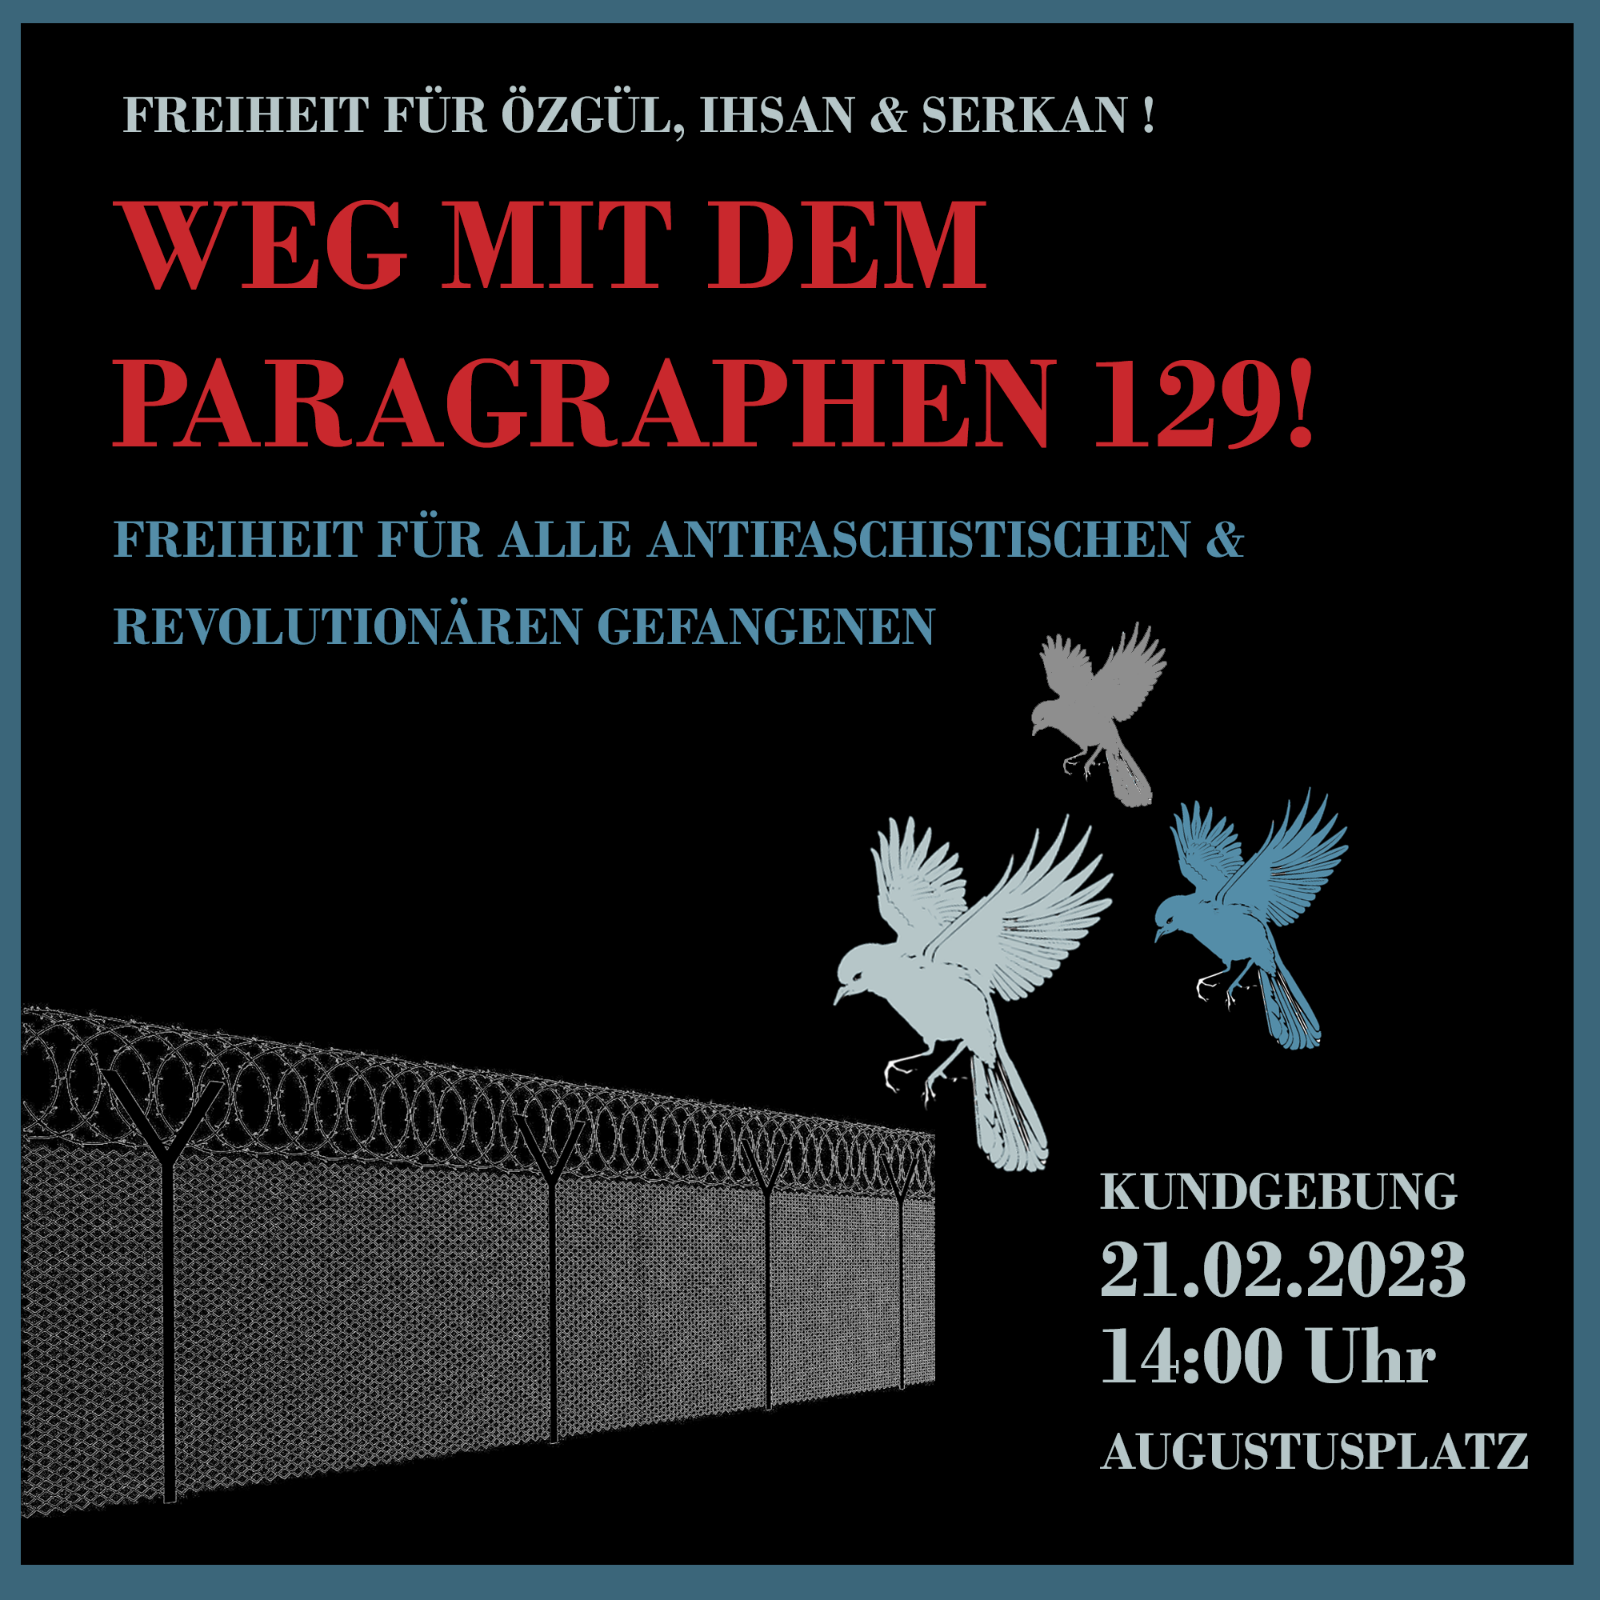 Weg mit dem Paragraphen 129! Freiheit für Özgül, Ihsan, Serkan & Hasan! Freiheit für alle antifaschistischen und revolutionären Gefangenen!